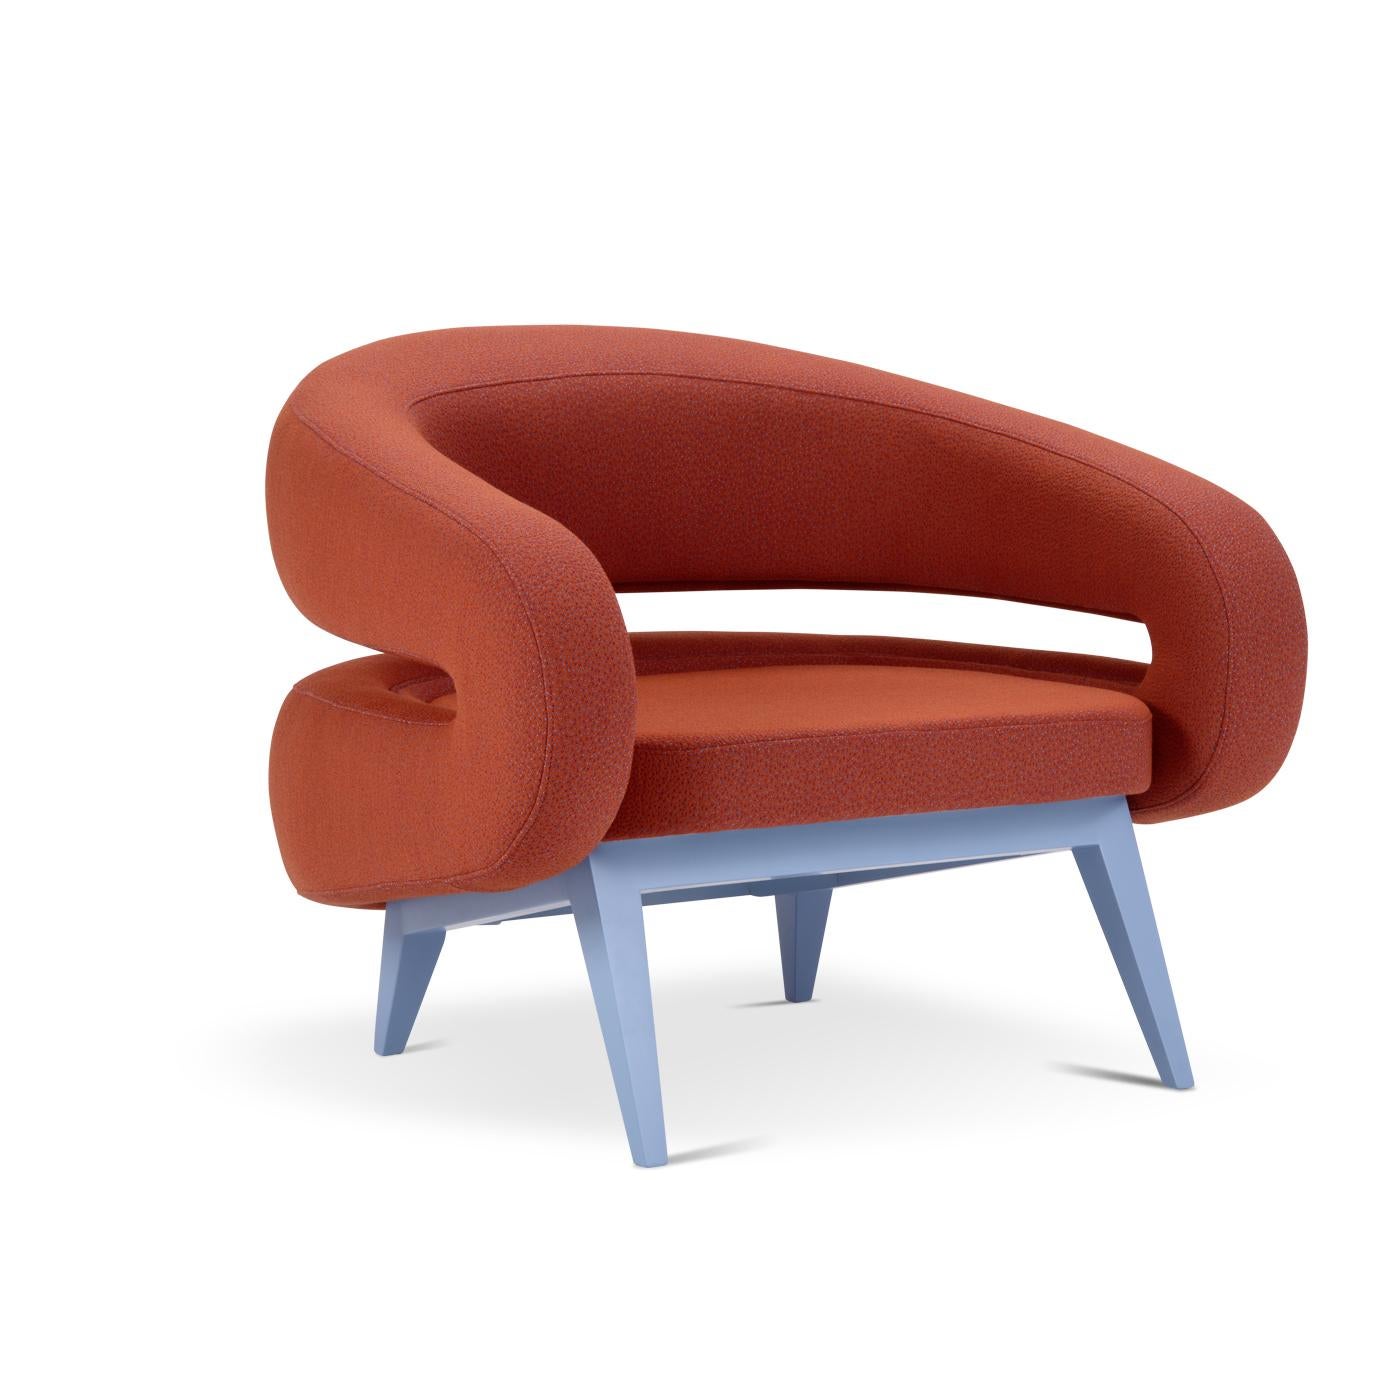 Avec un design futuriste, ce fauteuil dispose d'une base en bois de hêtre et est disponible en plusieurs couleurs. Le fauteuil vous enveloppe comme un câlin chaleureux et l'assise est rembourrée de mousse de polyuréthane indéformable de différentes